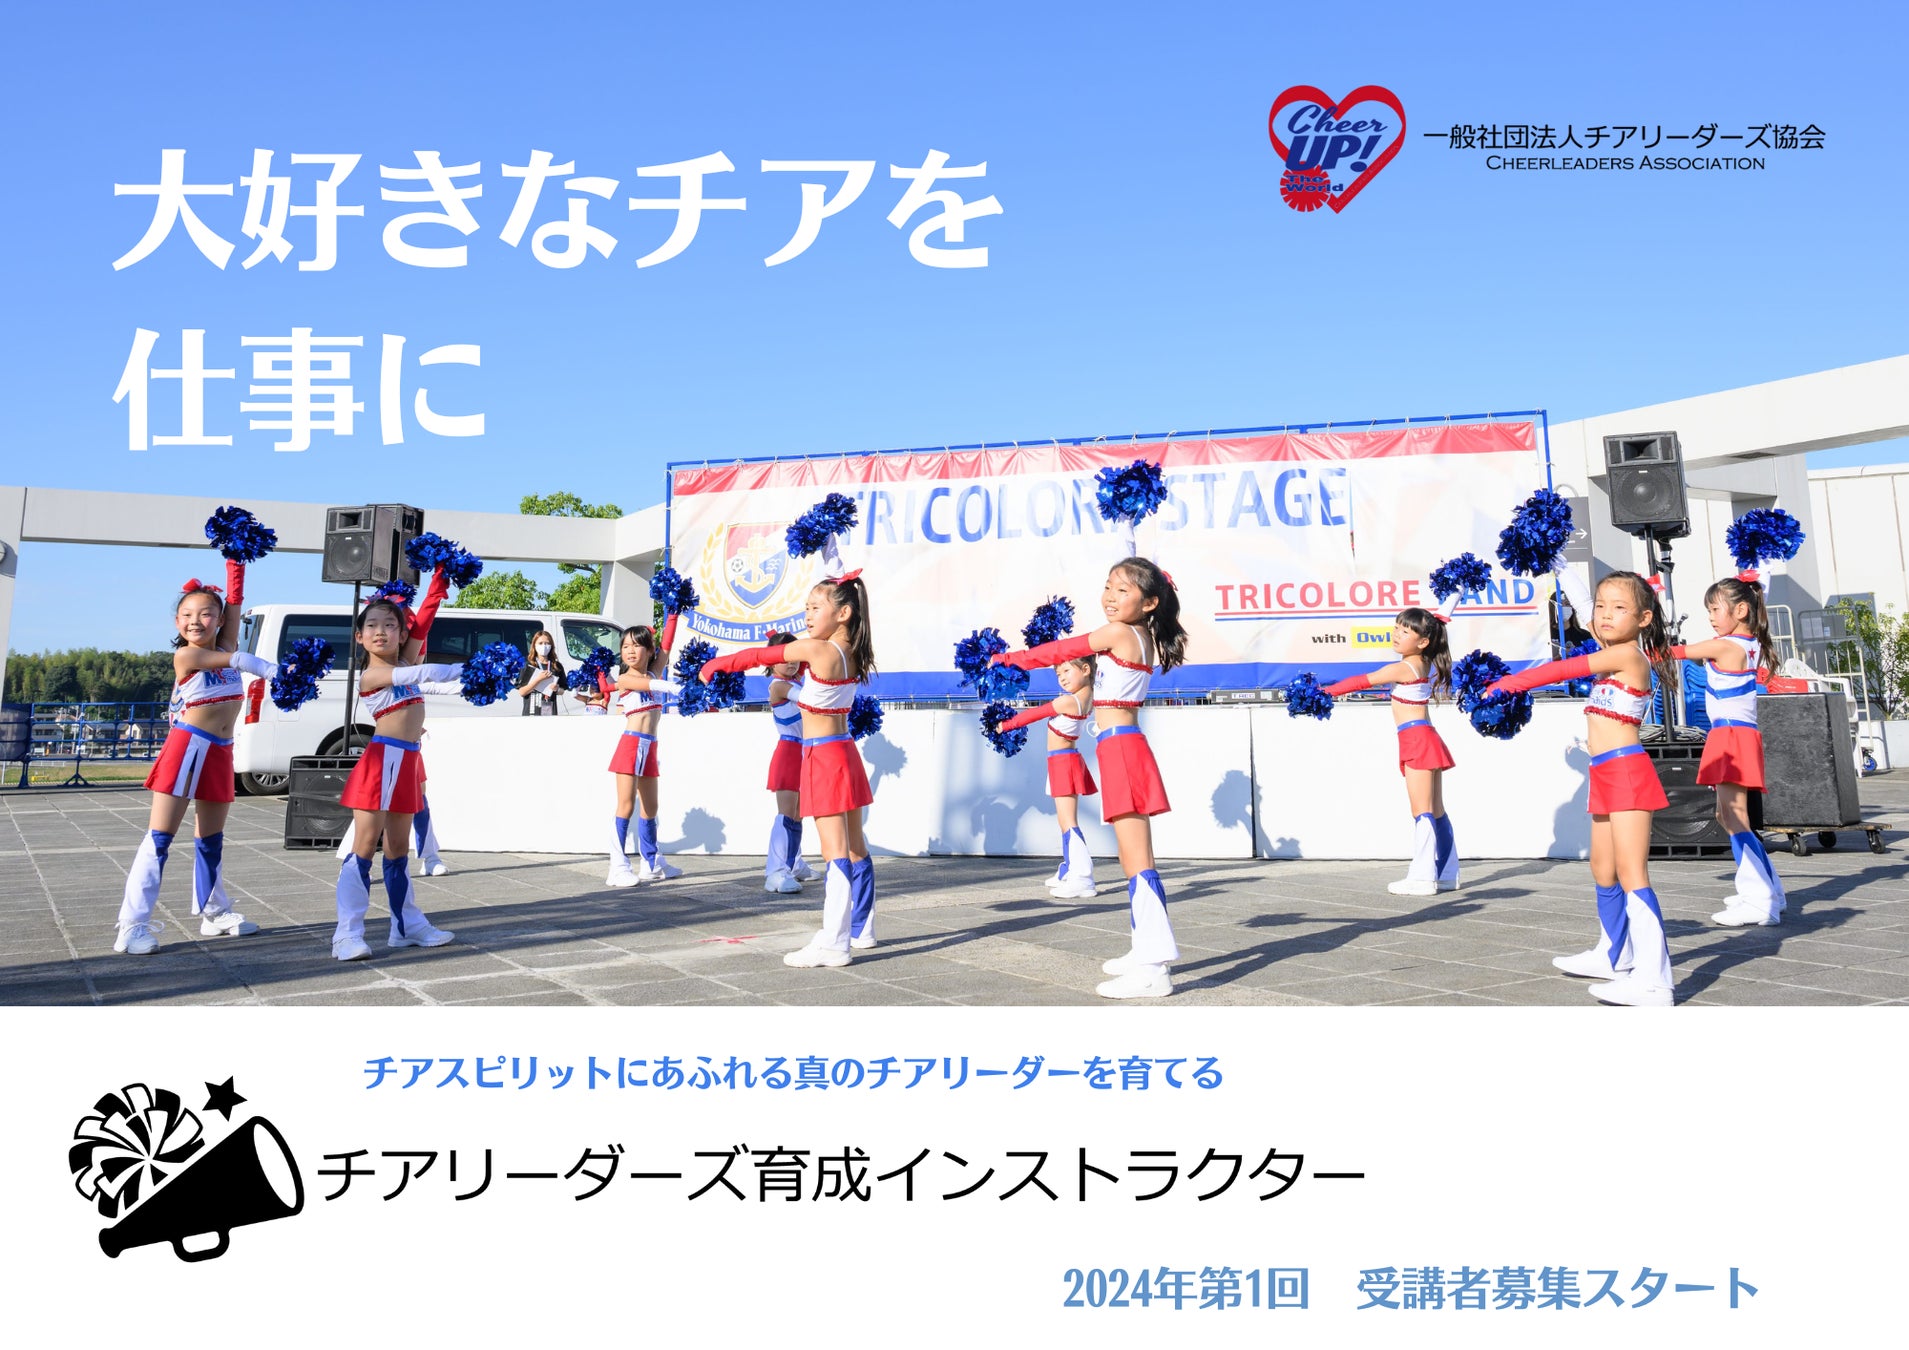 【チームスポンサー募集】横浜F・マリノスオフィシャルチアリーダーズ Tricolore Mermaids 2024メンバーの活動を支援してくださるCorporate Partnersを募集